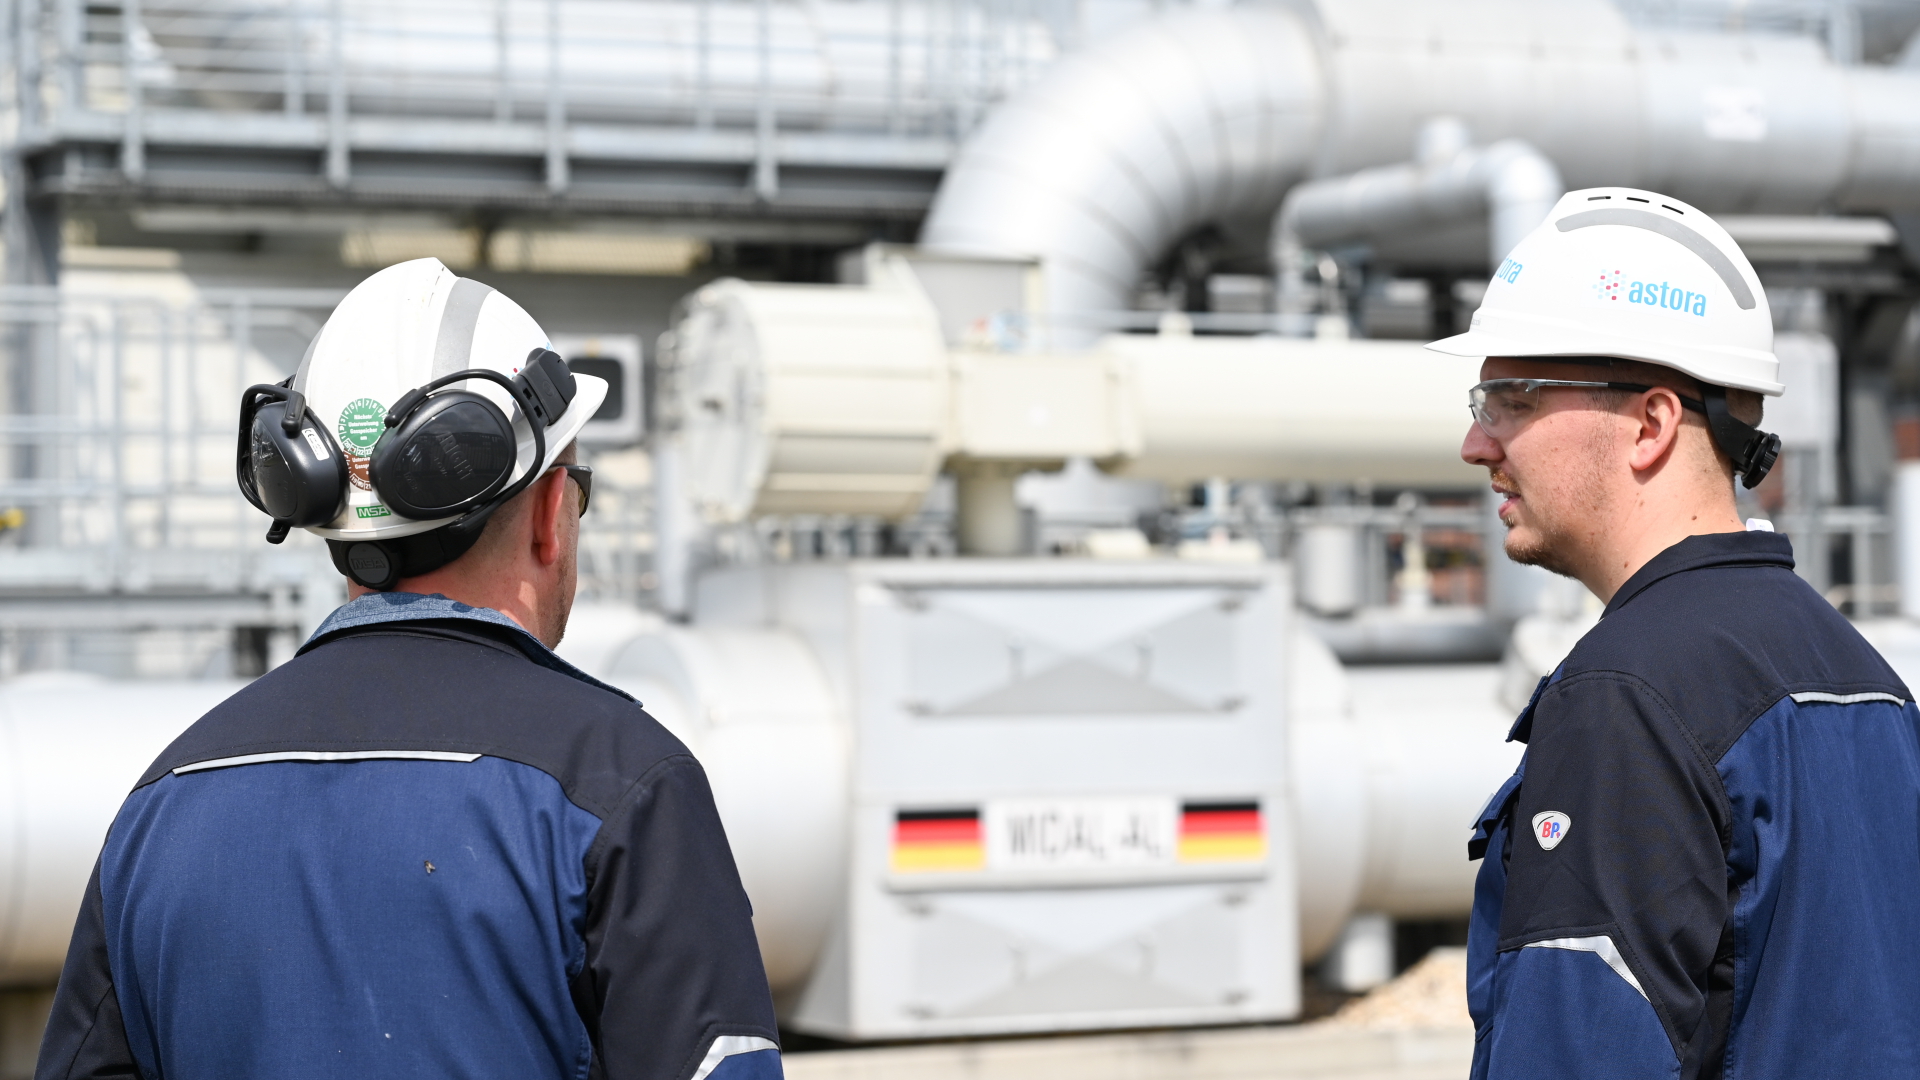 Zwei Mitarbeiter stehen auf dem Gelände des Astora Gasspeichers in Jemgum. Der Speicher ist einer der größten Erdgasspeicherbetreiber in Europa.